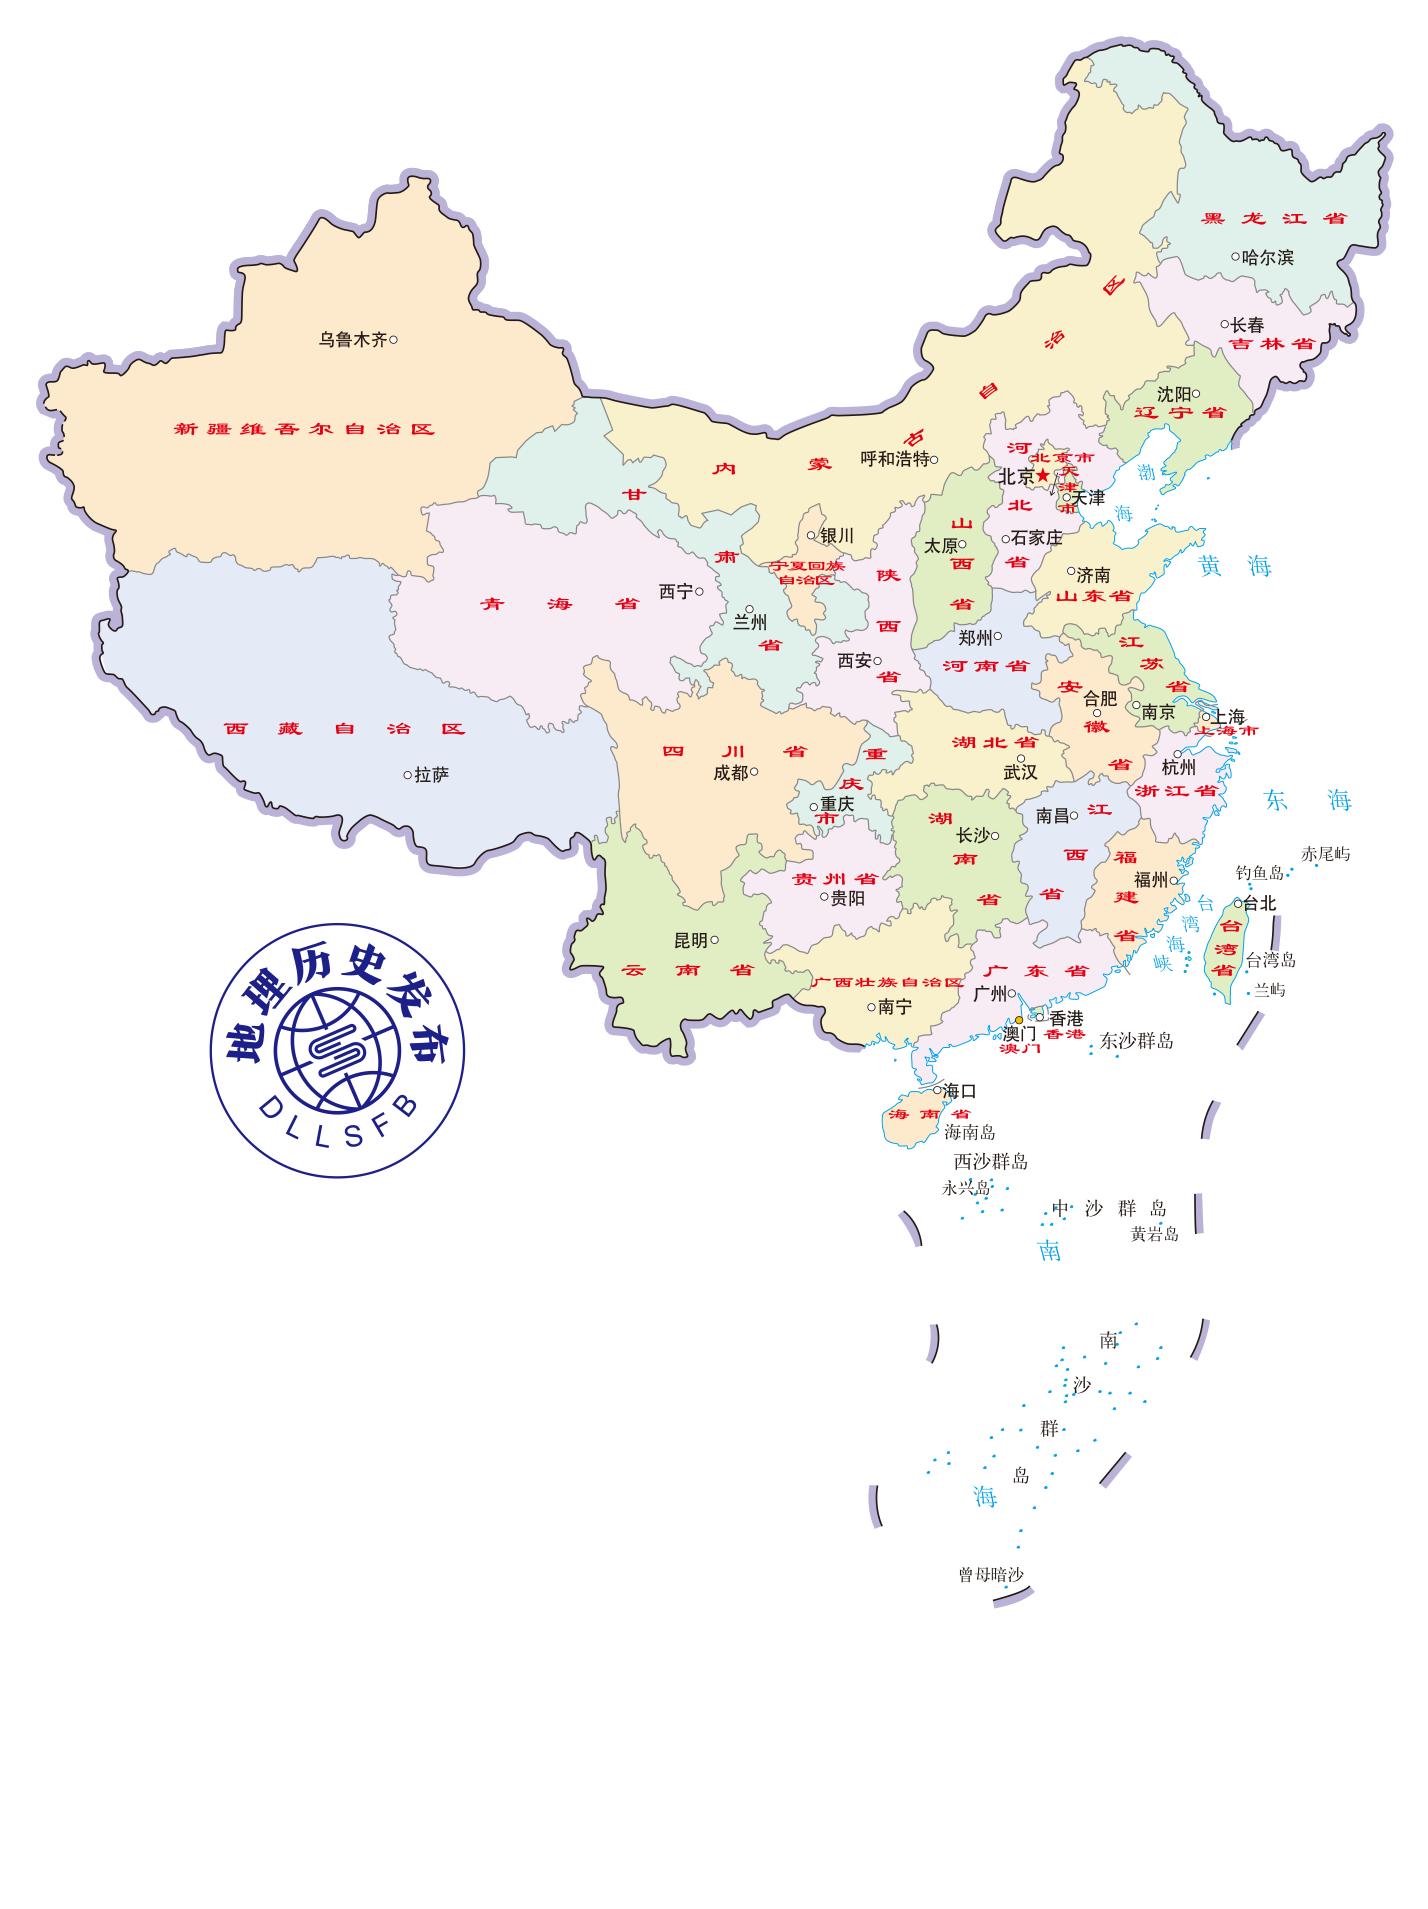 中国有多少个省级行政区 中国现有省级行政区划分规则